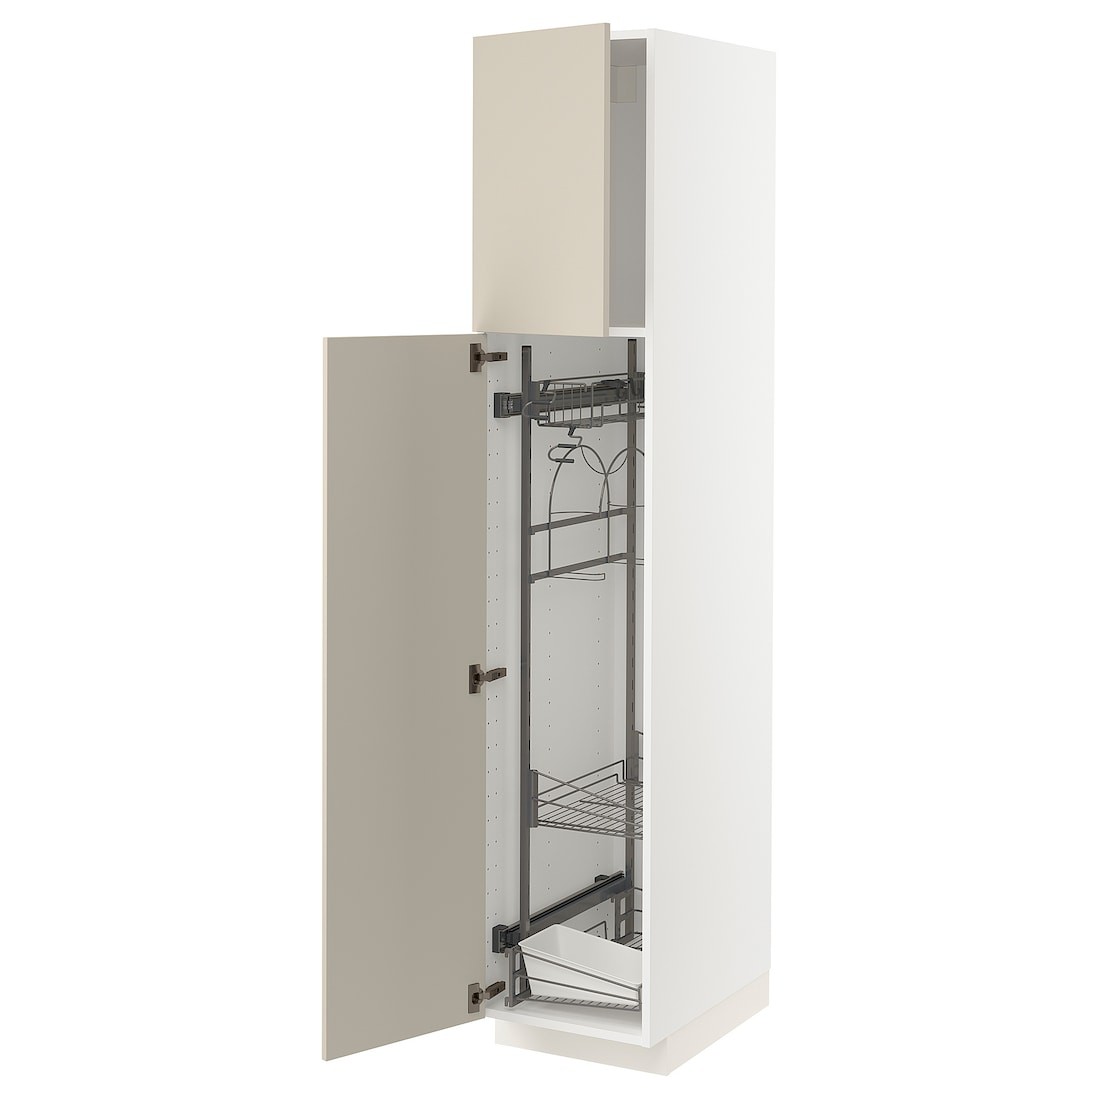 METOD МЕТОД Высокий шкаф с отделением для аксессуаров для уборки, белый / Havstorp бежевый, 40x60x200 см